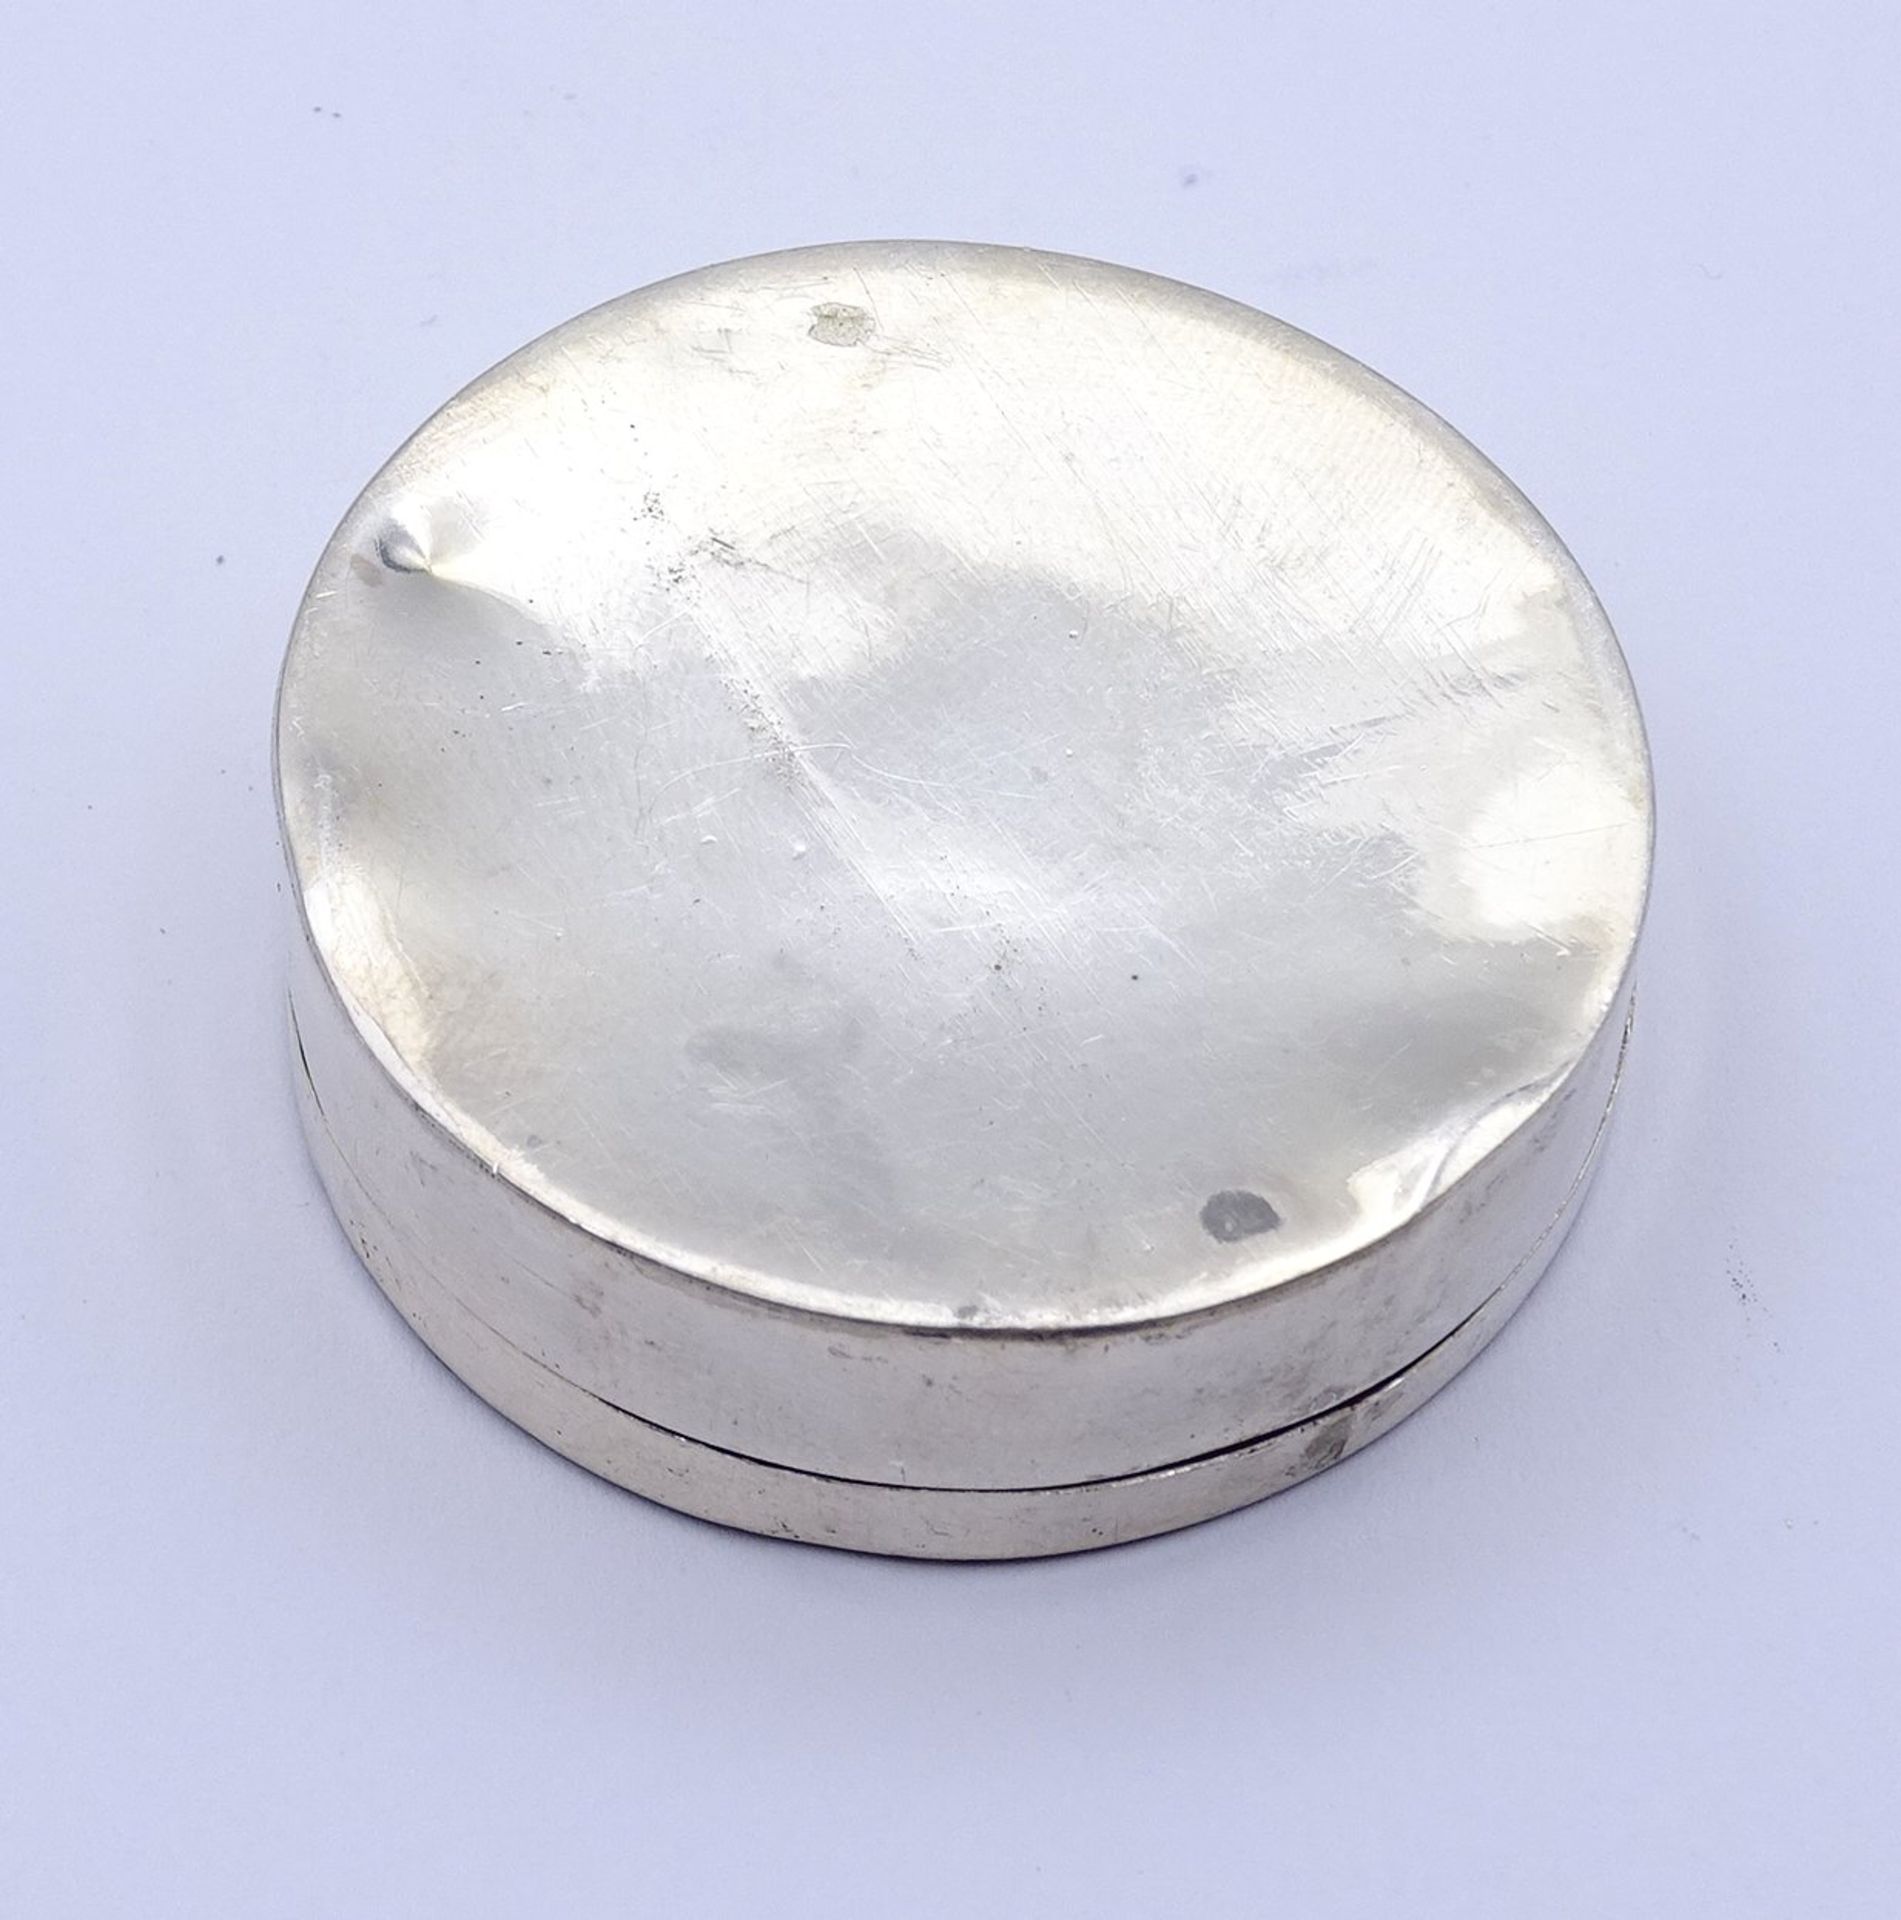 Silberne Pillendose (gepr.) mit Perlmutteinlagen, Ø 4,3 cm, H. 1,2 cm, 22 gr., mit Altersspuren, Pe - Bild 3 aus 3